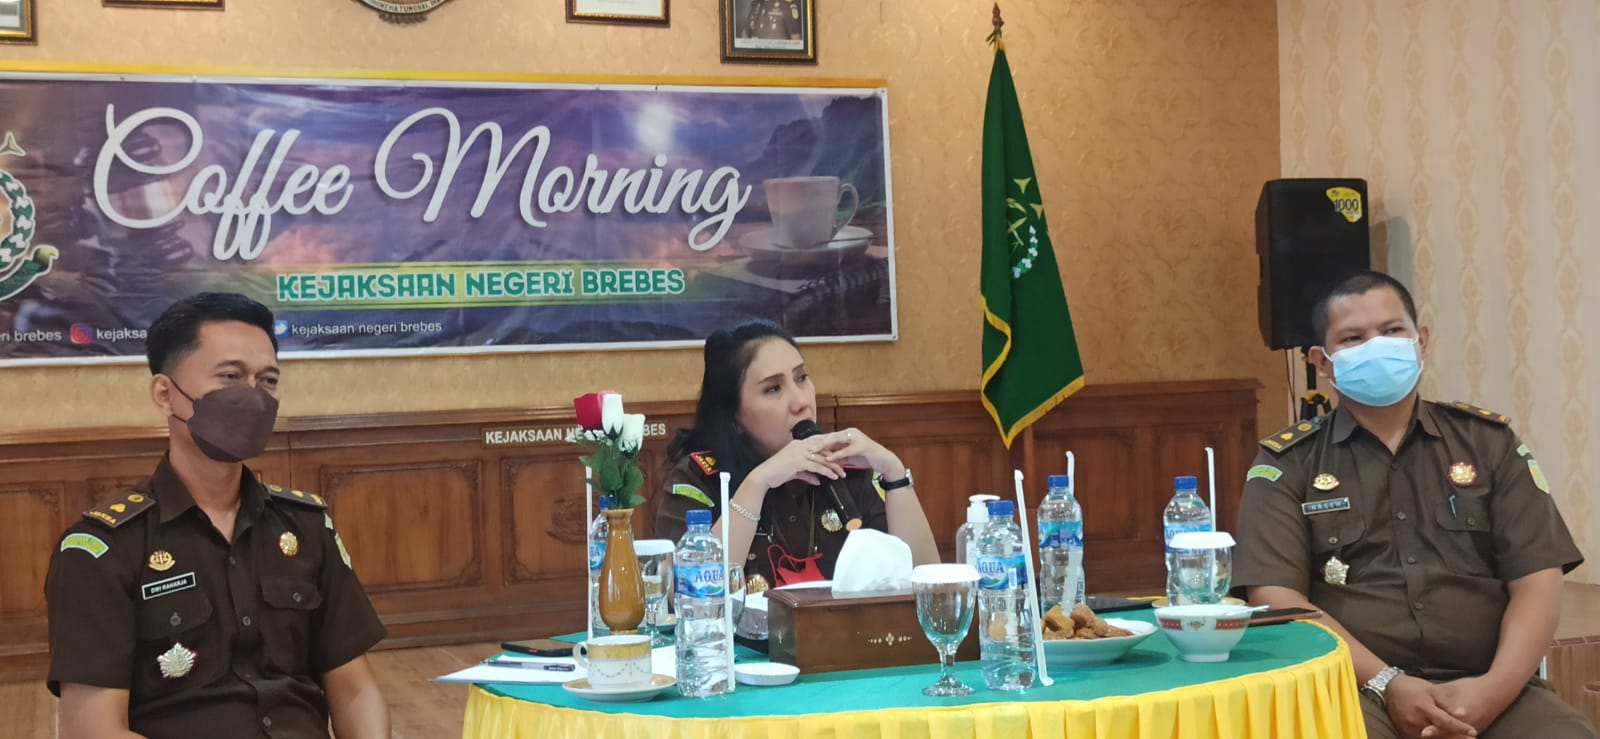 Kepala Kejaksaan Negeri Brebes, Mernawati, saat menggelar Coffe Morning dengan awak media di Brebes. / ist